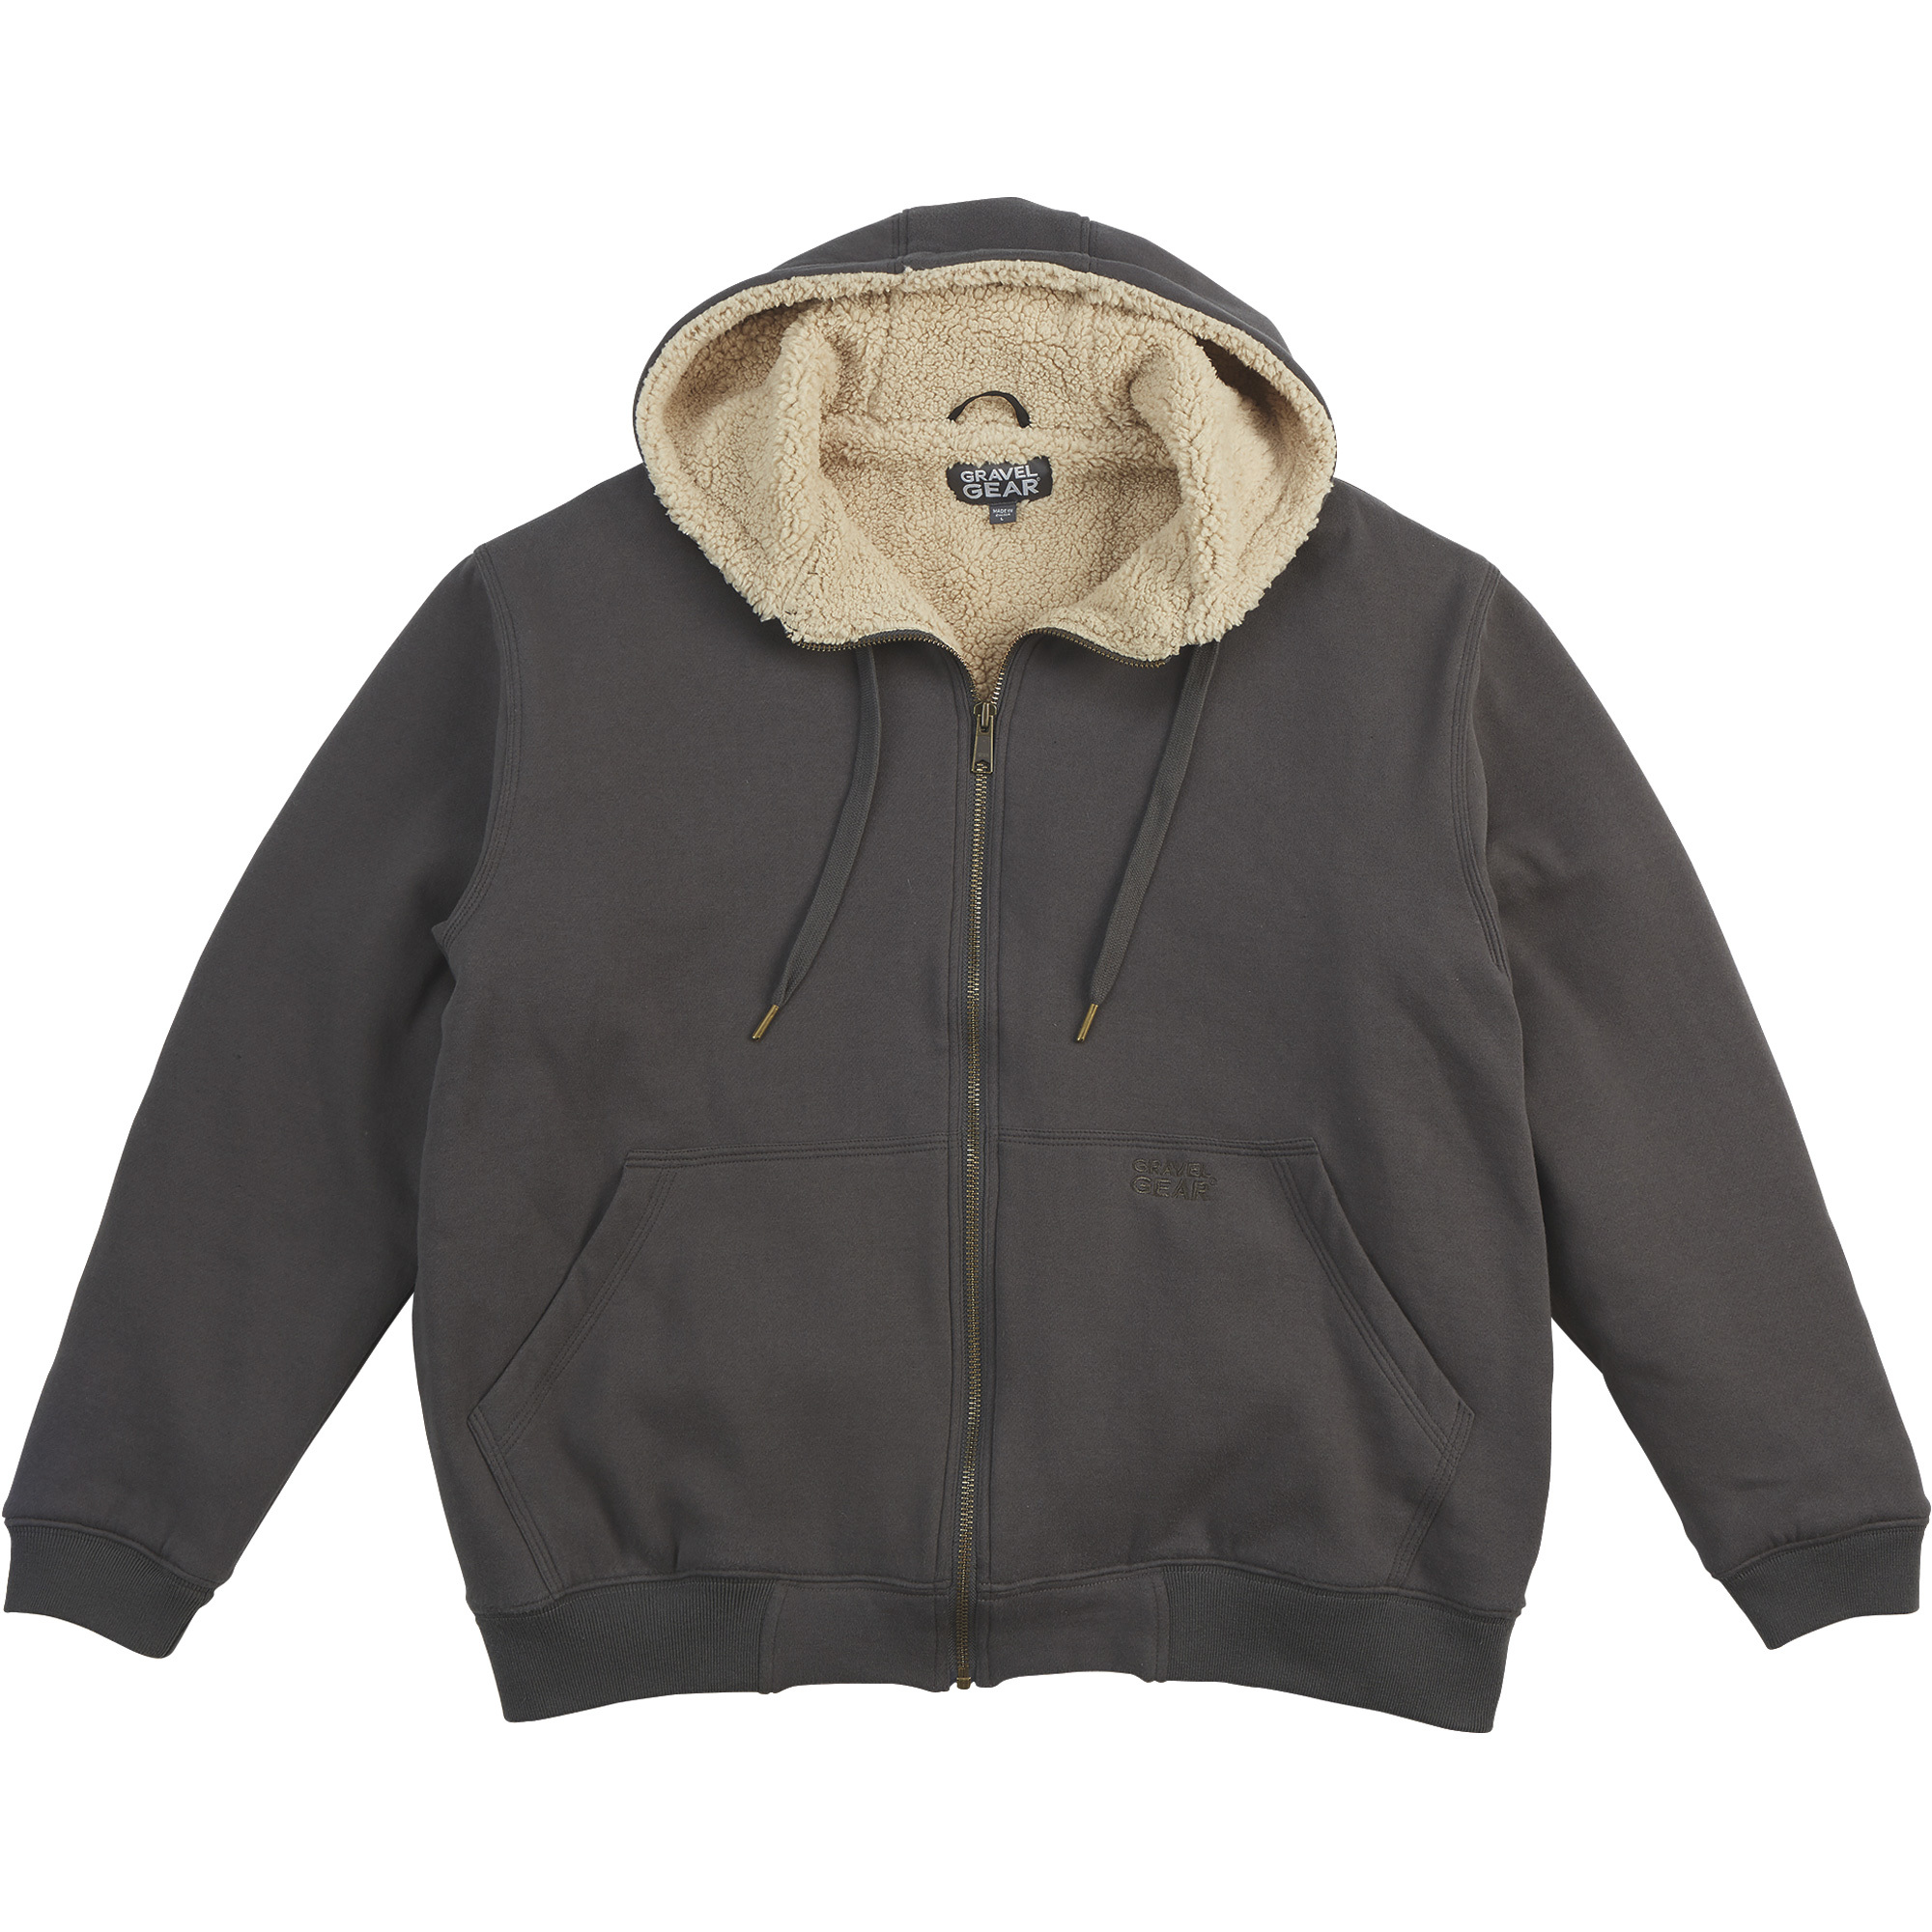 Gravel Gear Men's Sherpa-Lined Full-Zip Hooded Sweatshirt â Charcoal, 2XL